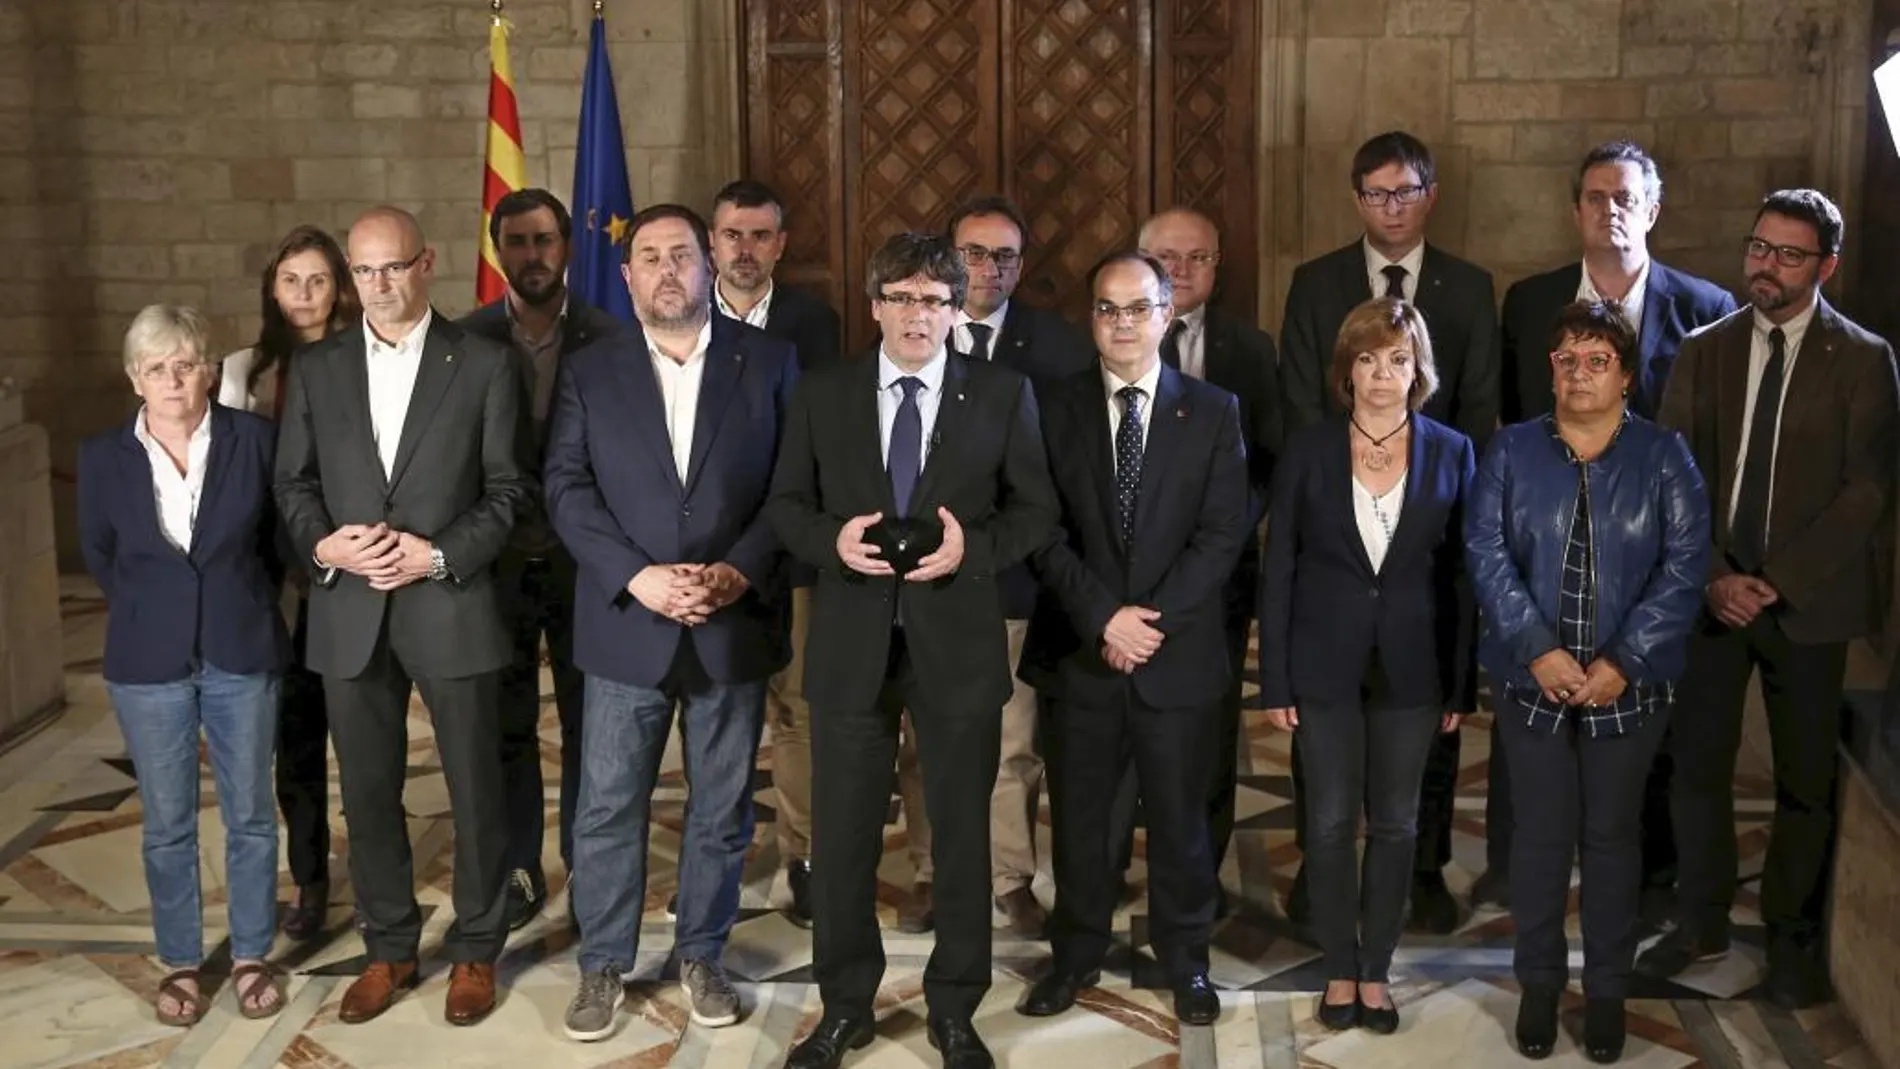 Fotografia facilitada por la Generalitat de la declaración del president catalán Carles Puigdemont y su gobierno tras el referéndum ilegal celebrado hoy en Cataluña.